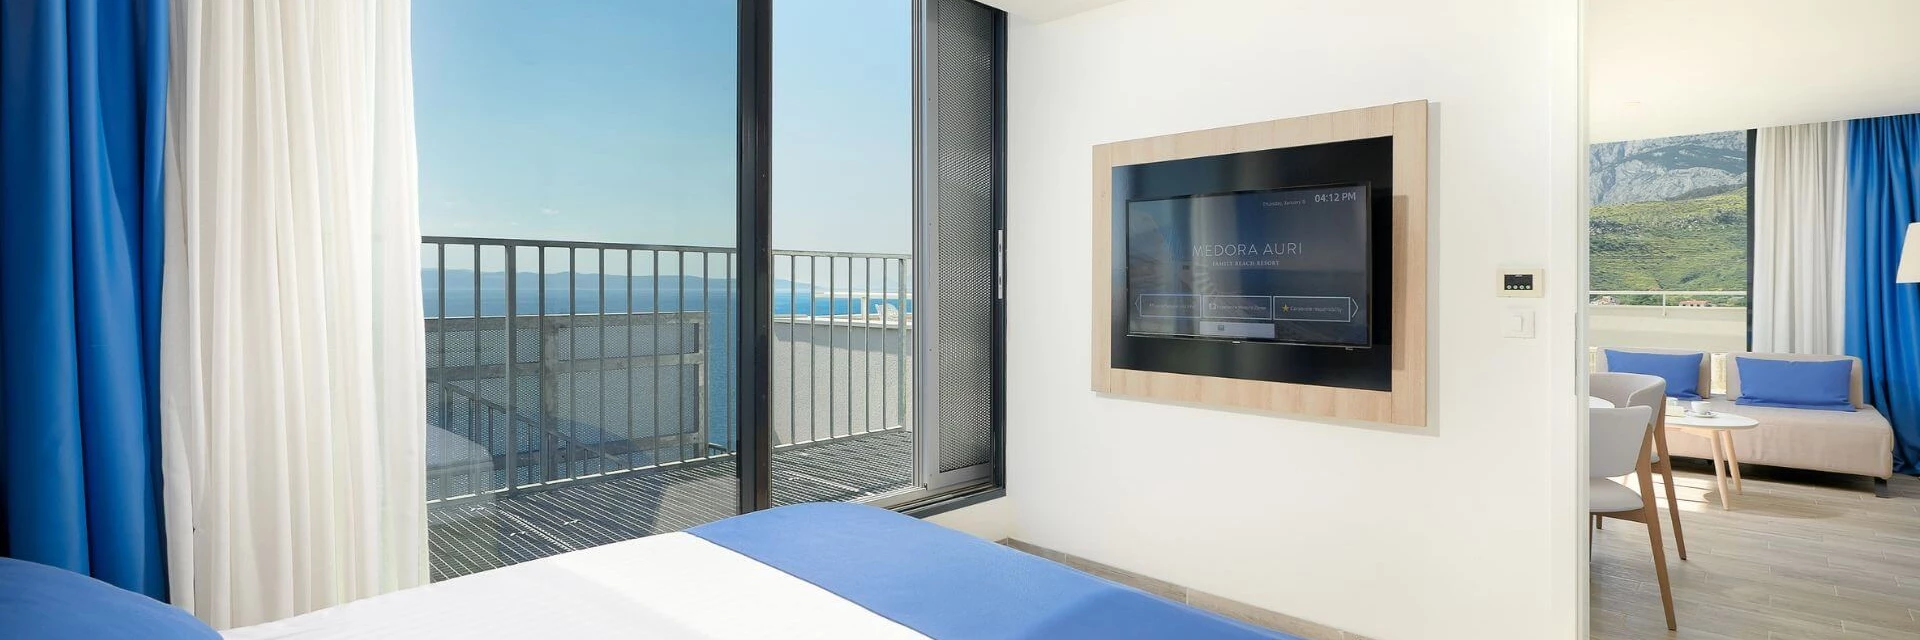 Deluxe suite - direktni pogled na more - krovna terasa